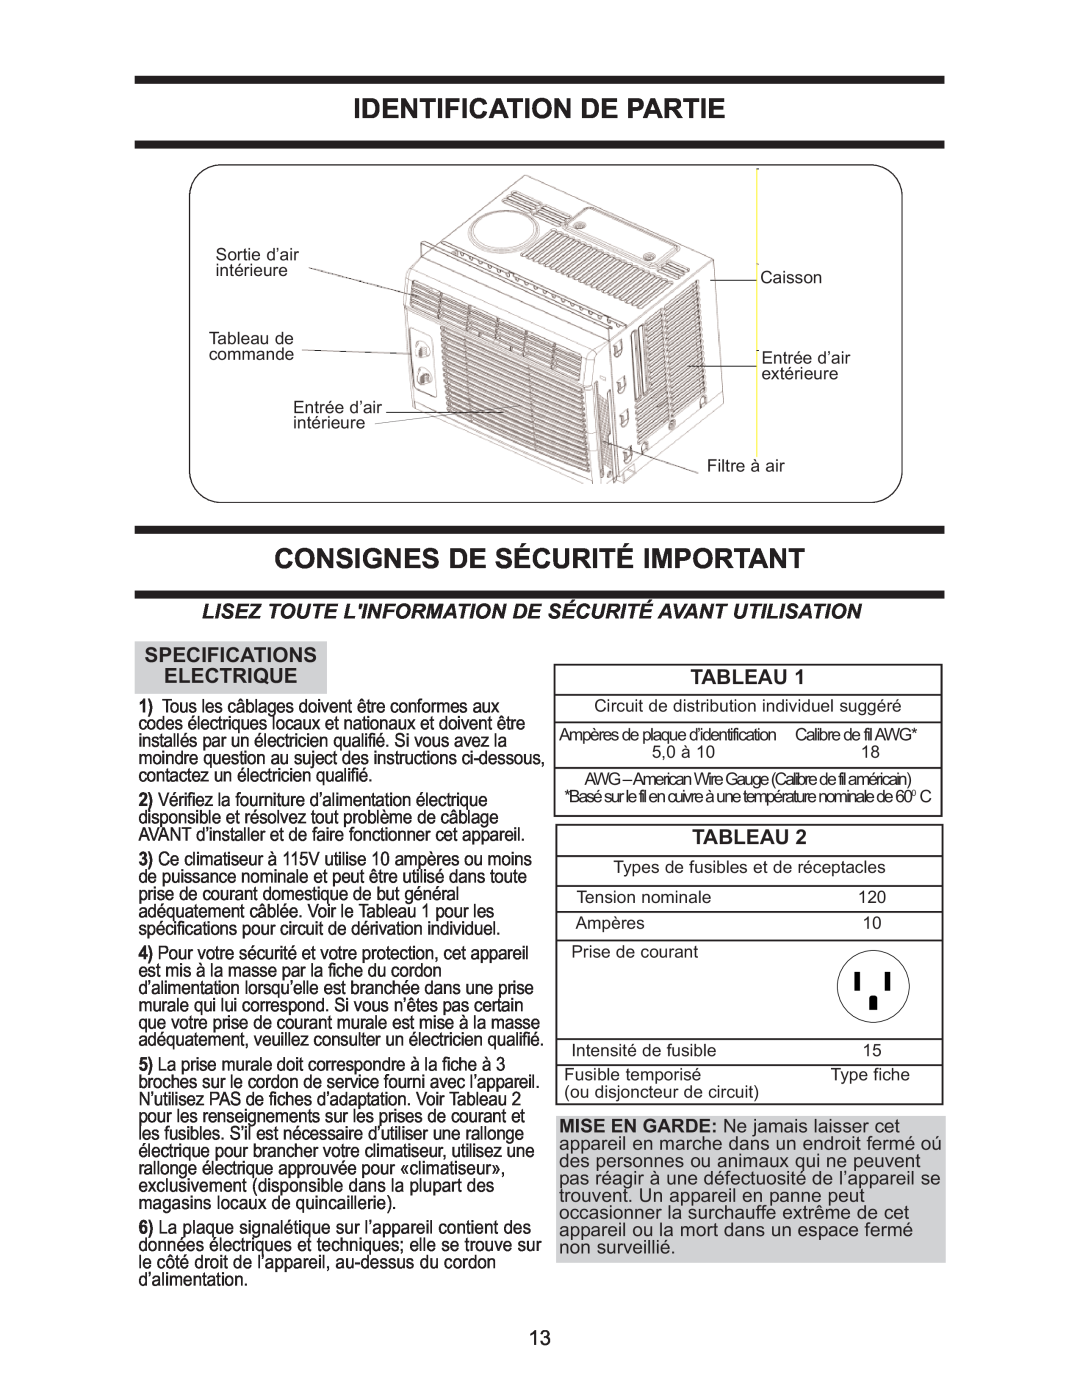 Danby DAC 5209M manual Identification De Partie, Consignes De Sécurité Important, Specifications Electrique, Tableau 